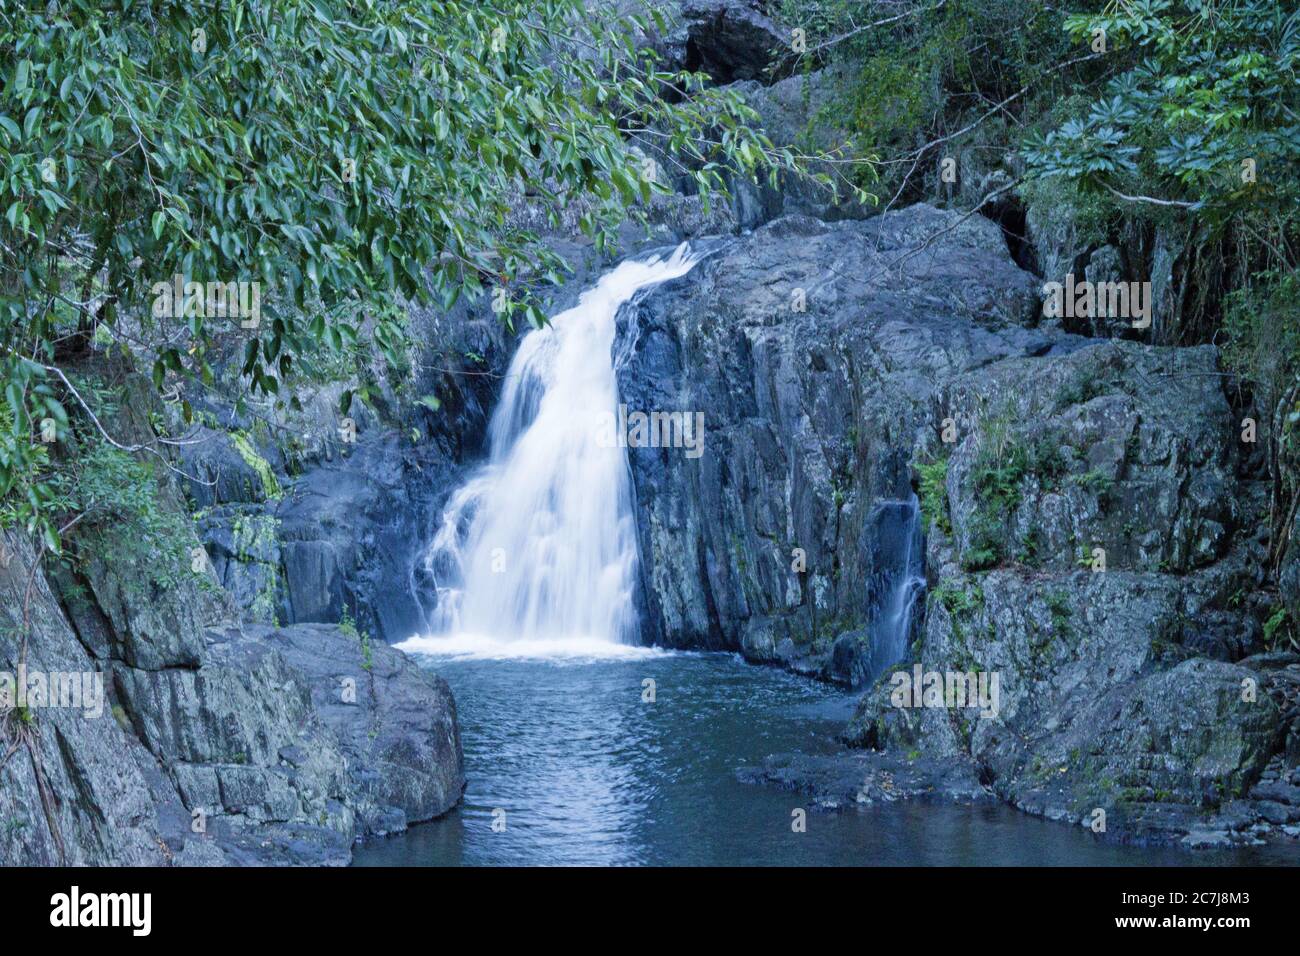 La cascata e la principale zona delle buche da nuoto presso le Cascades di Crystal nella periferia di Cairns sono un luogo di ritrovo molto popolare. Foto Stock